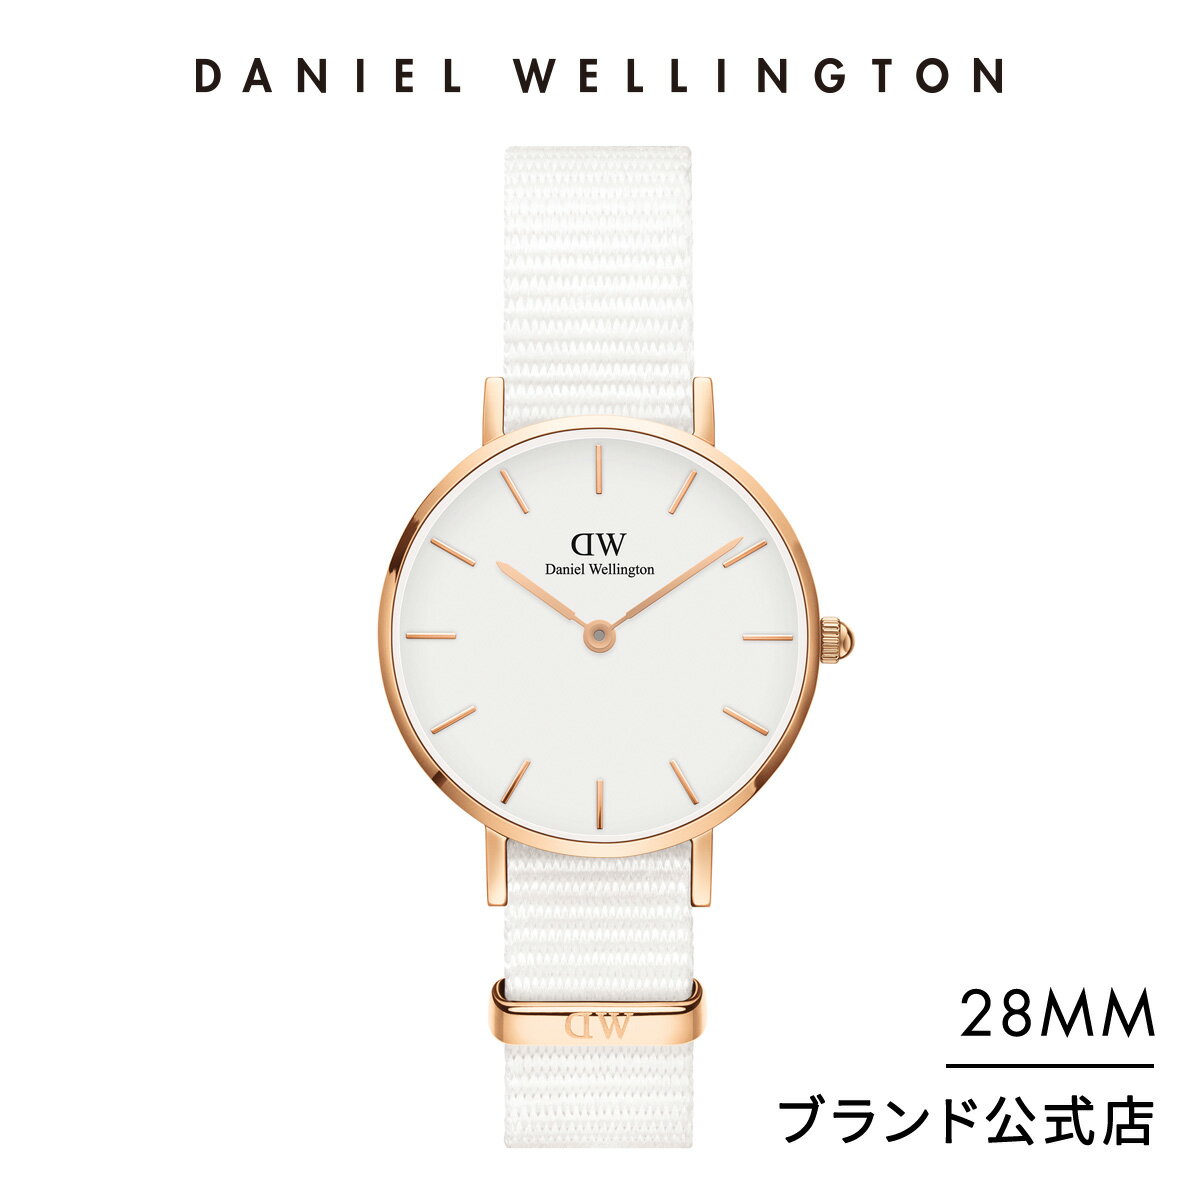 ブランド腕時計 レディース ダニエルウェリントン 人気ブランドランキング21 ベストプレゼント